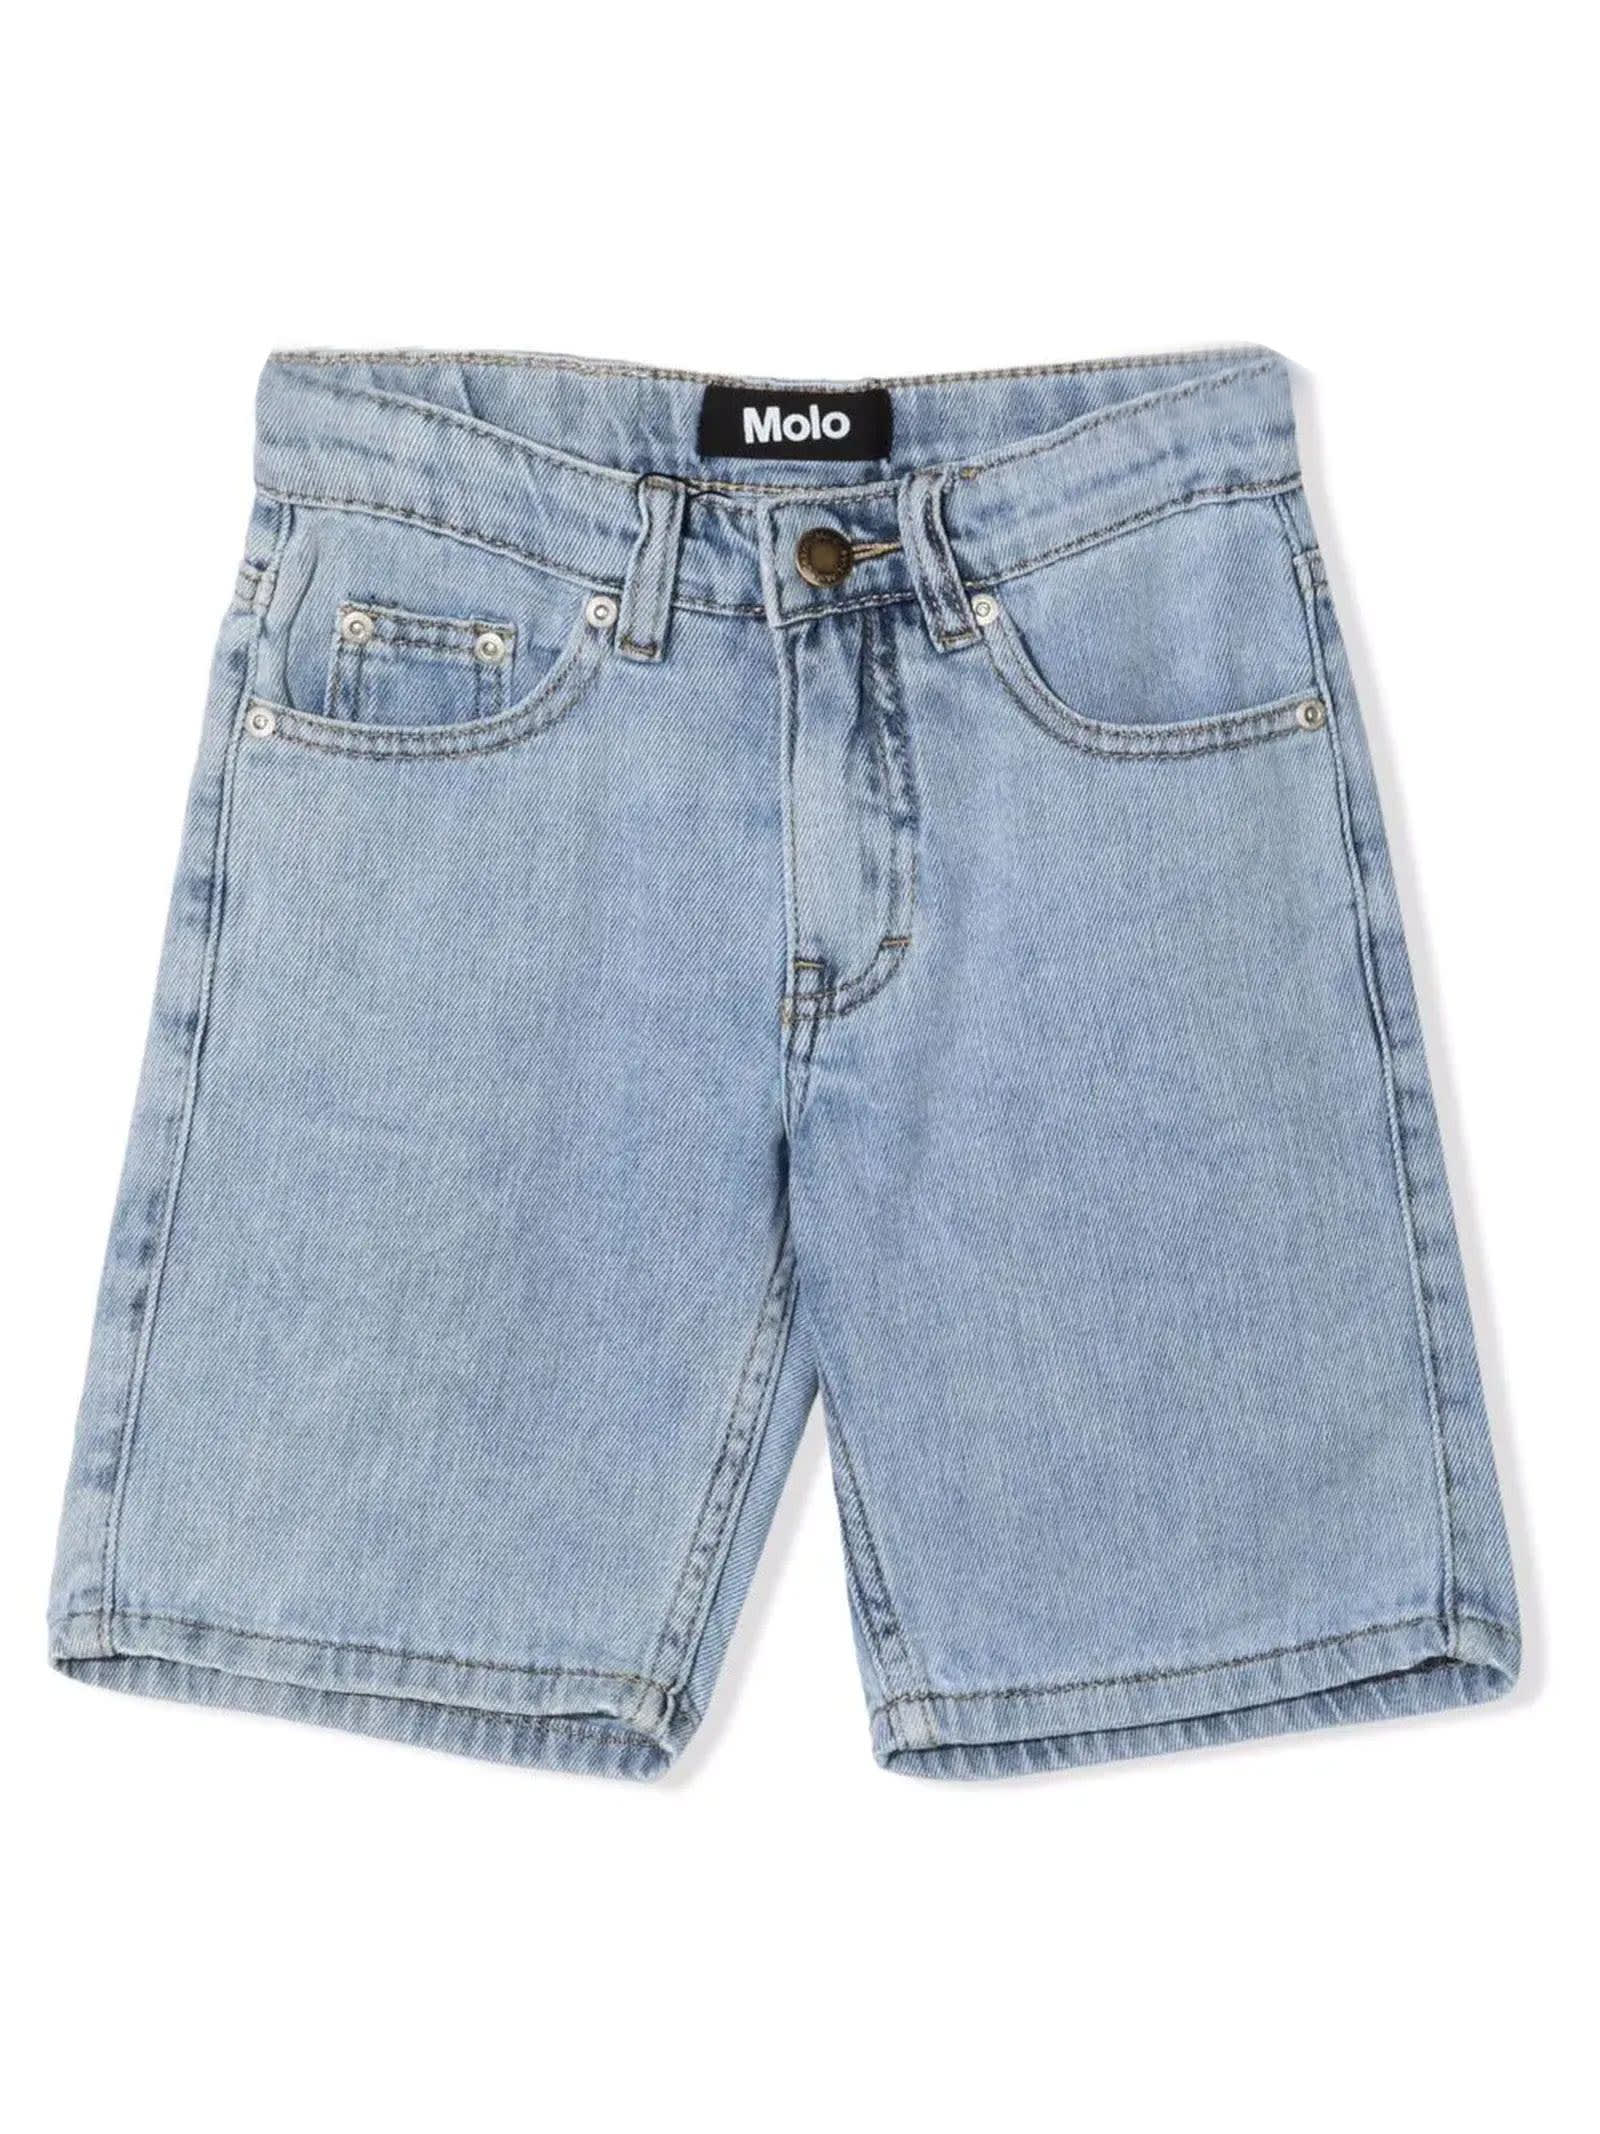 Molo Blue Cotton Denim Shorts